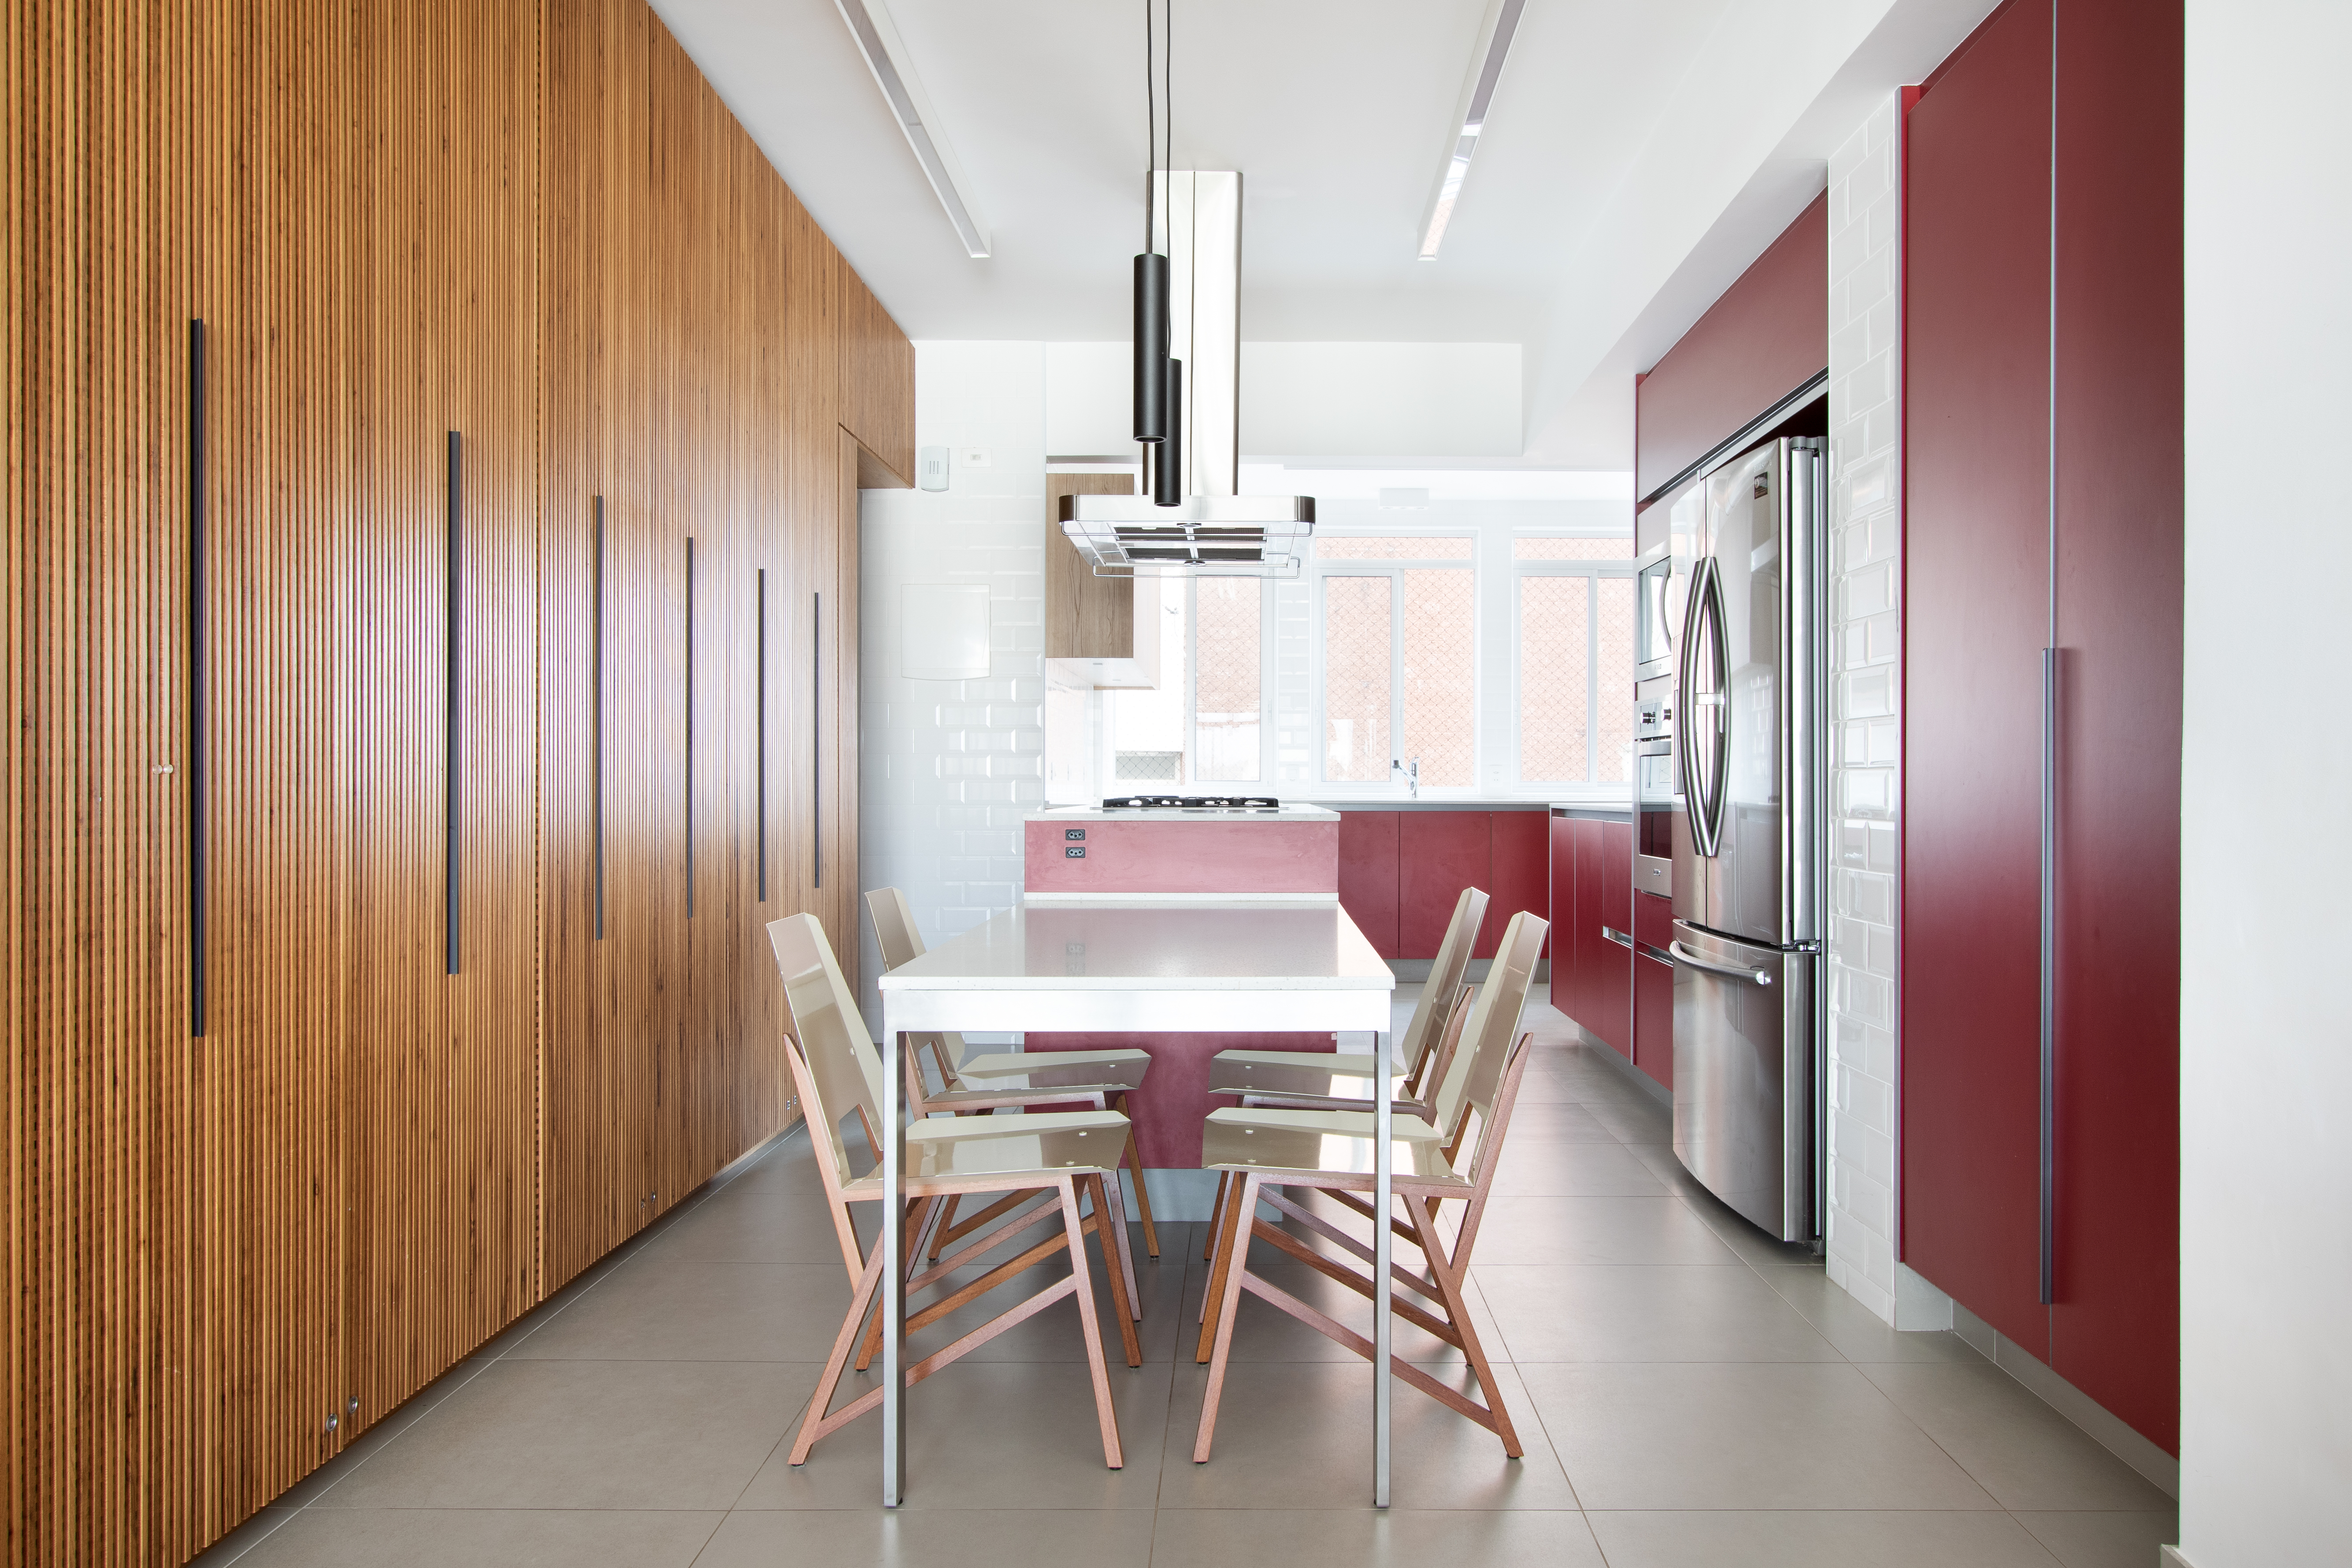  150 m²:n huoneistossa on punainen keittiö ja sisäänrakennettu viinikellari.